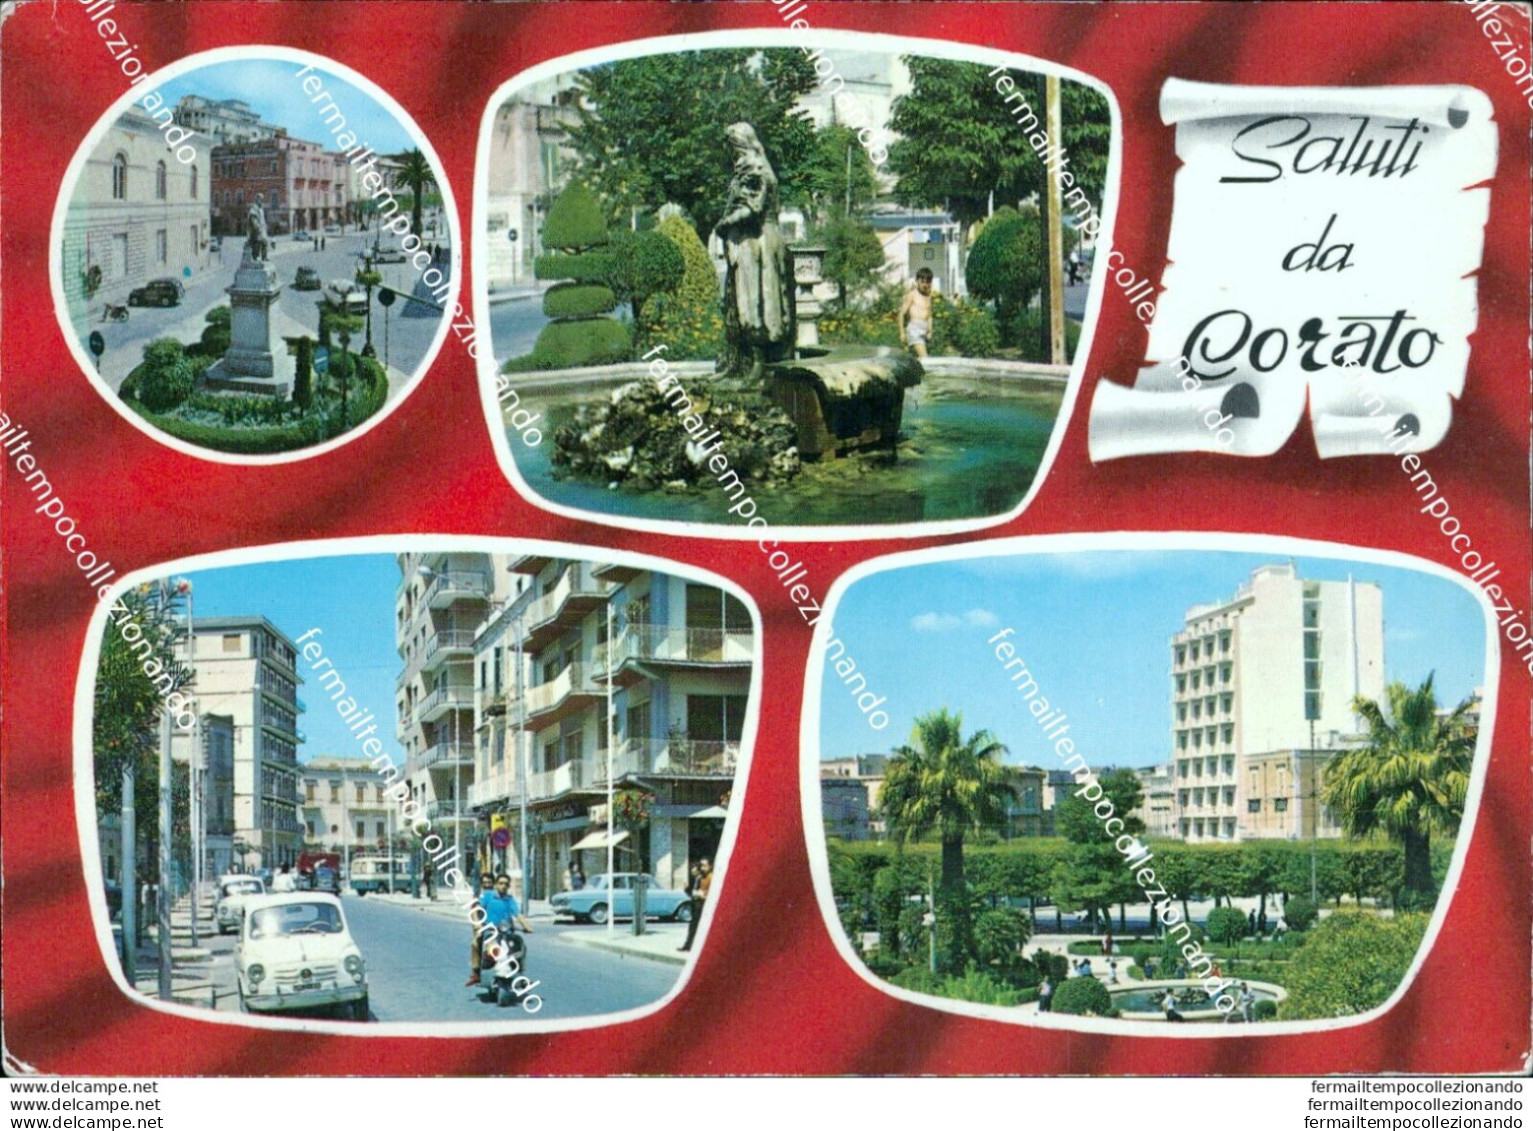 U671 Cartolina Saluti Da Corato Provincia Di Bari - Bari